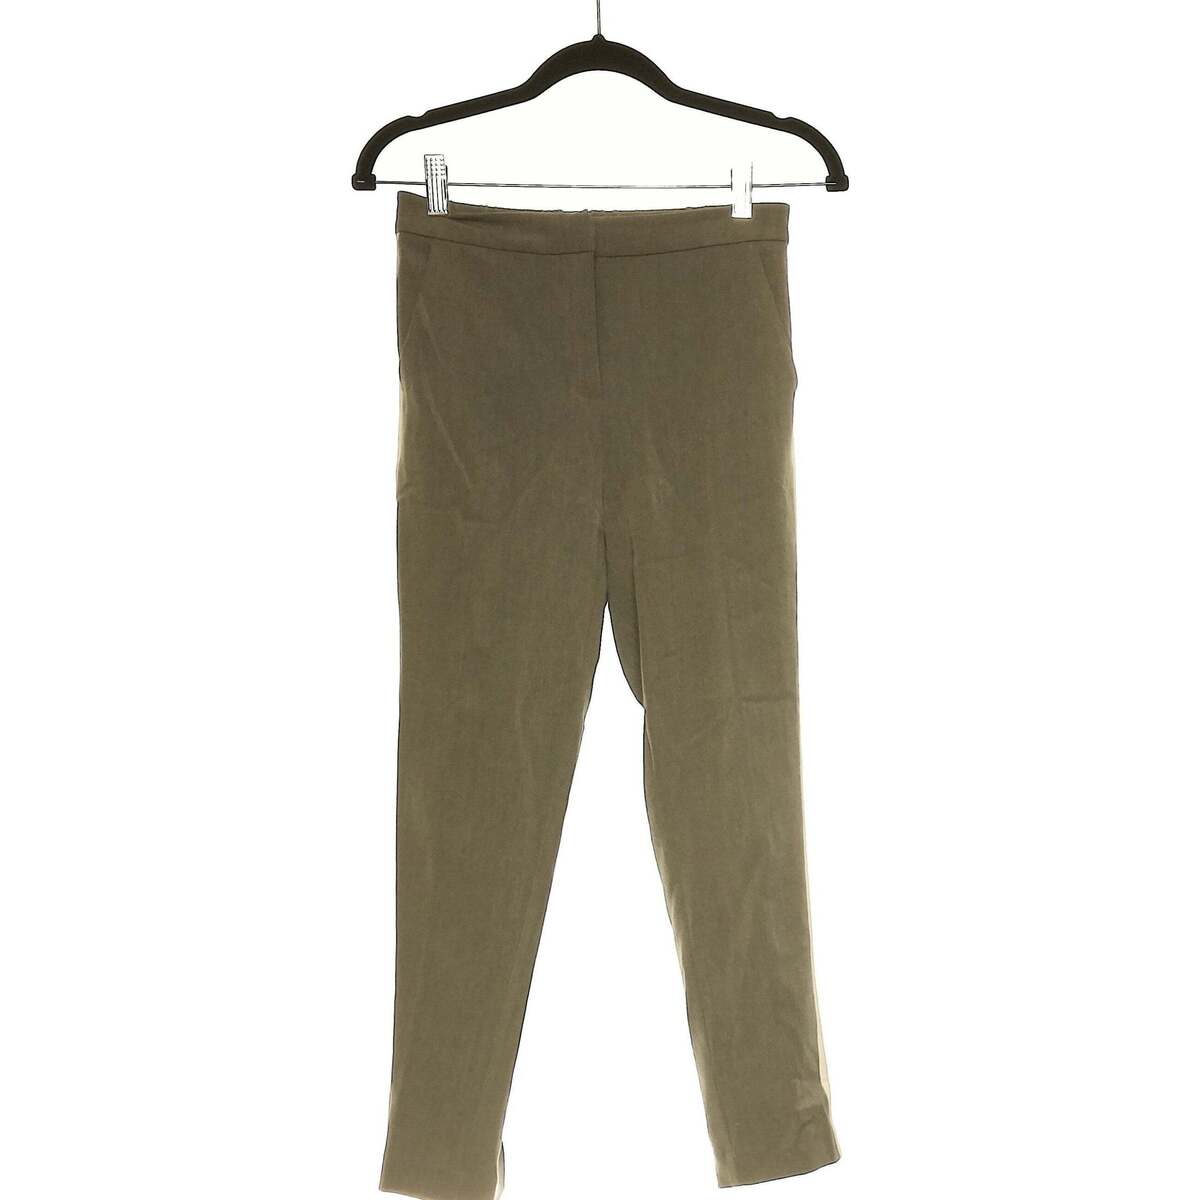 Vêtements Femme Pantalons Bizzbee 34 - T0 - XS Gris